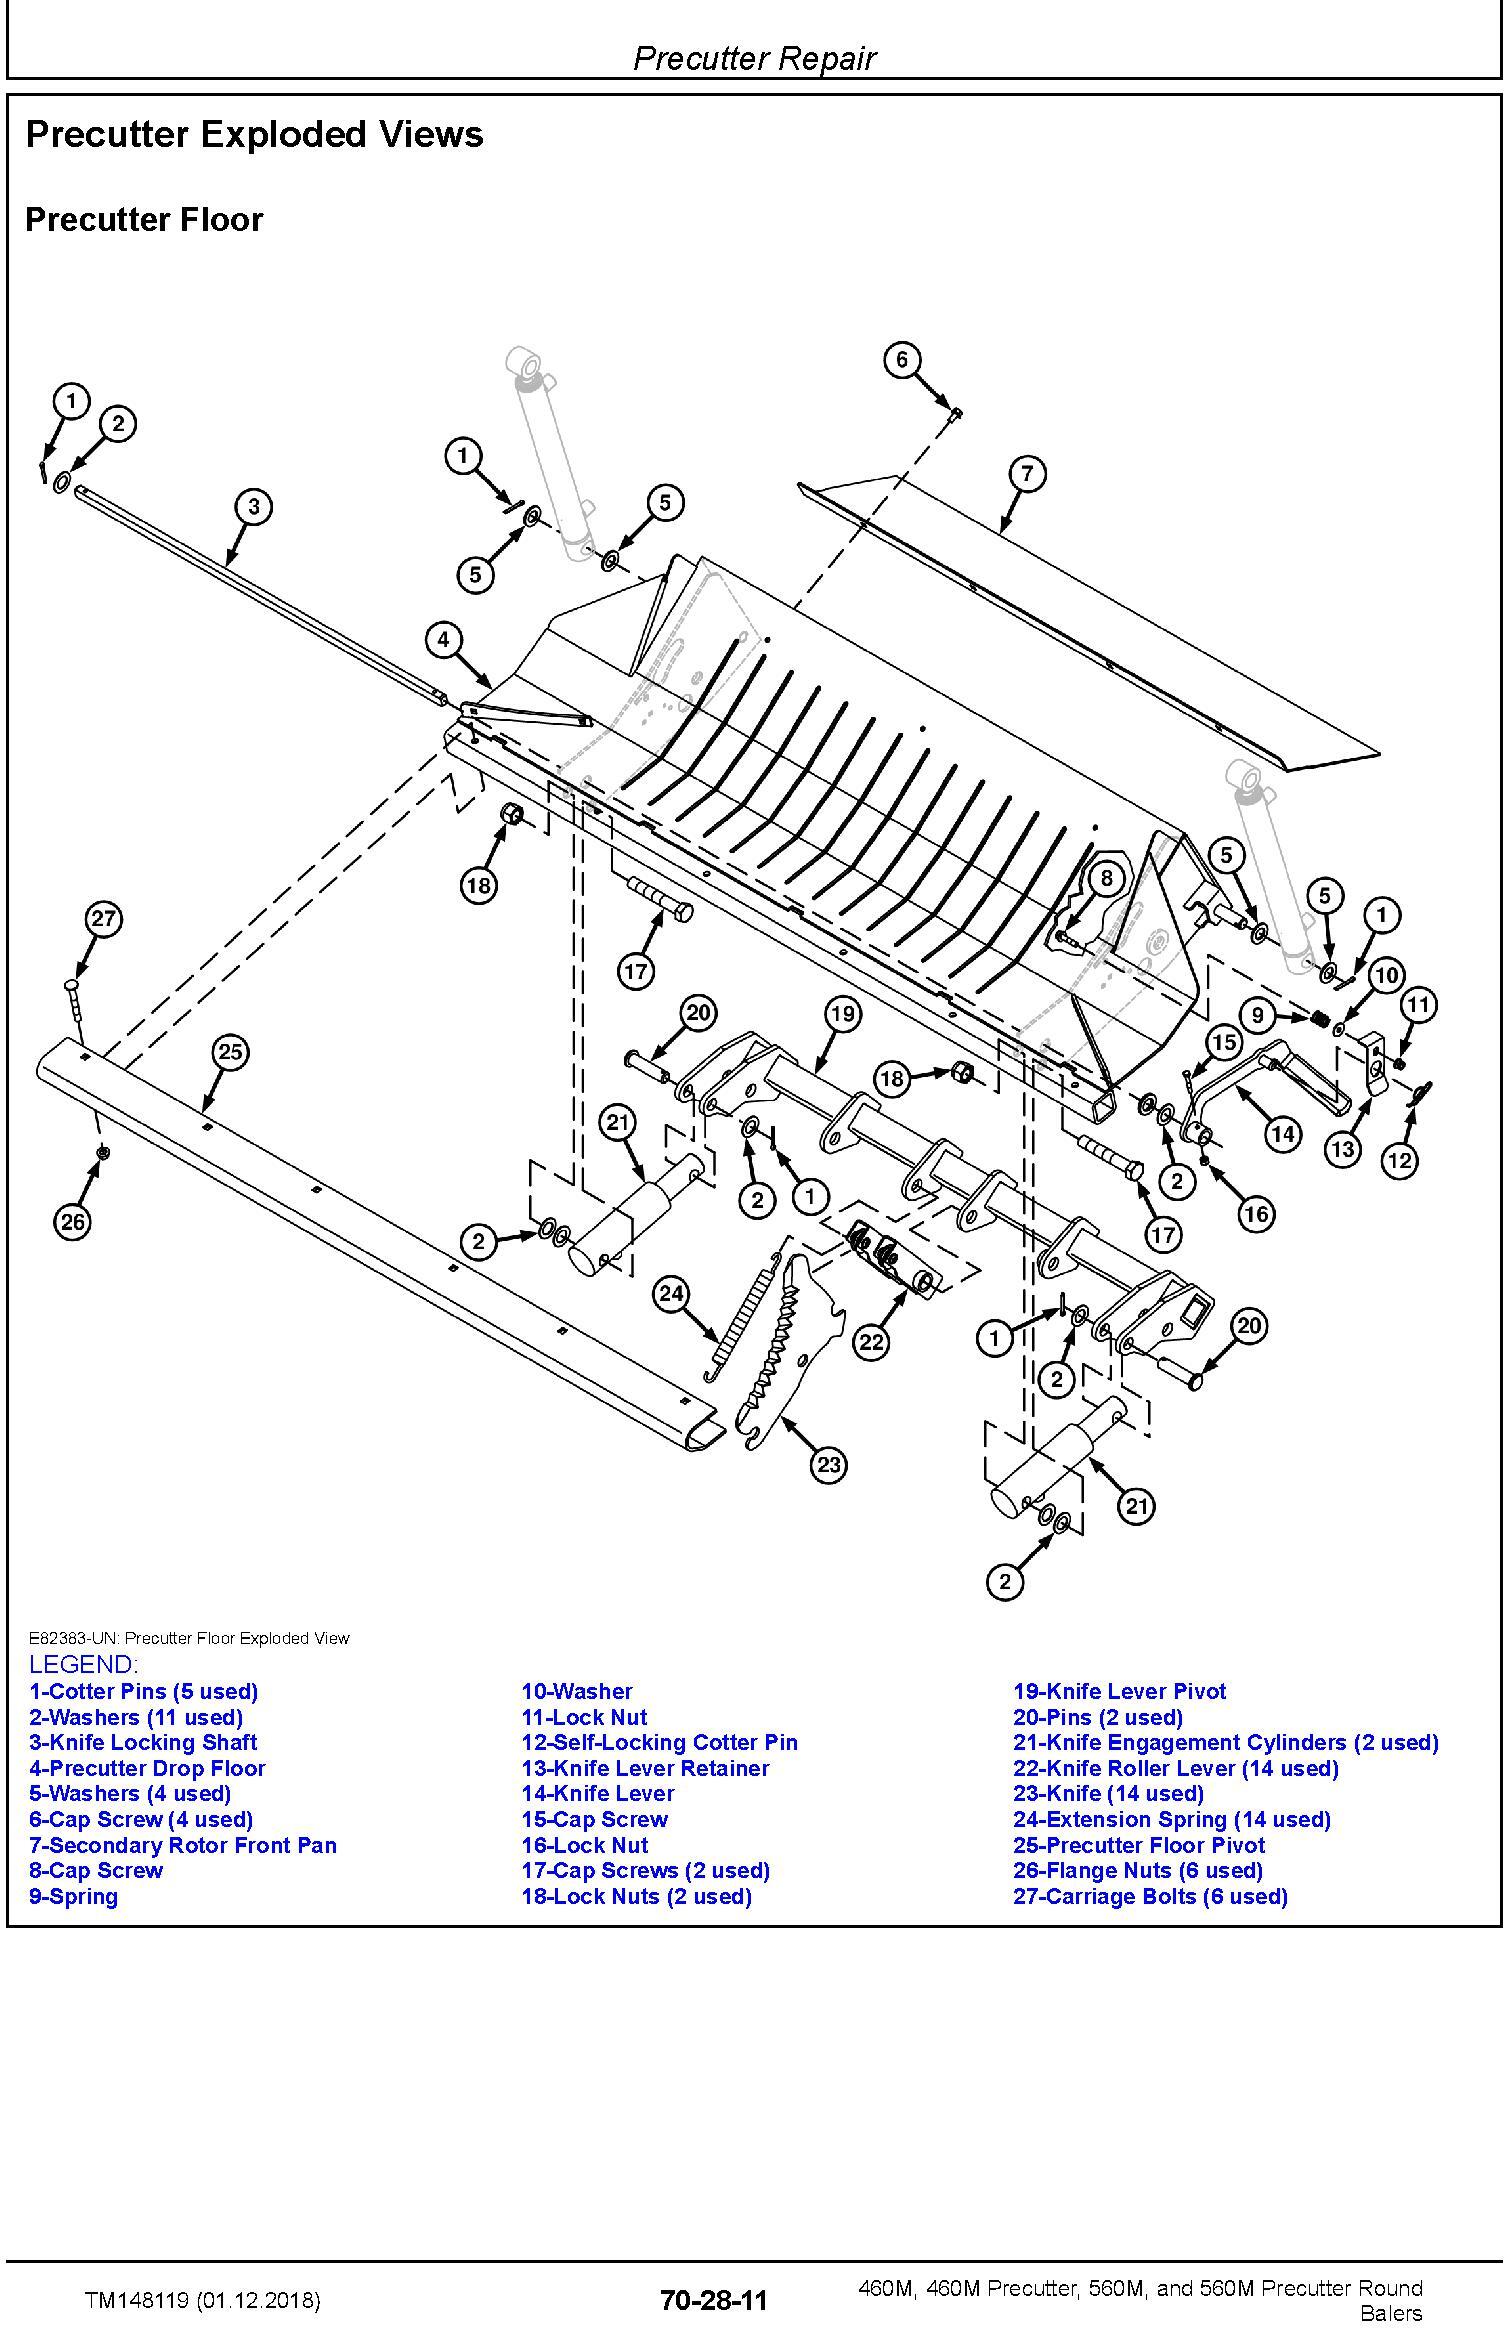 John Deere 460M, 460M Precutter, 560M, and 560M Precutter Round Balers Technical Manual (TM148119) - 3